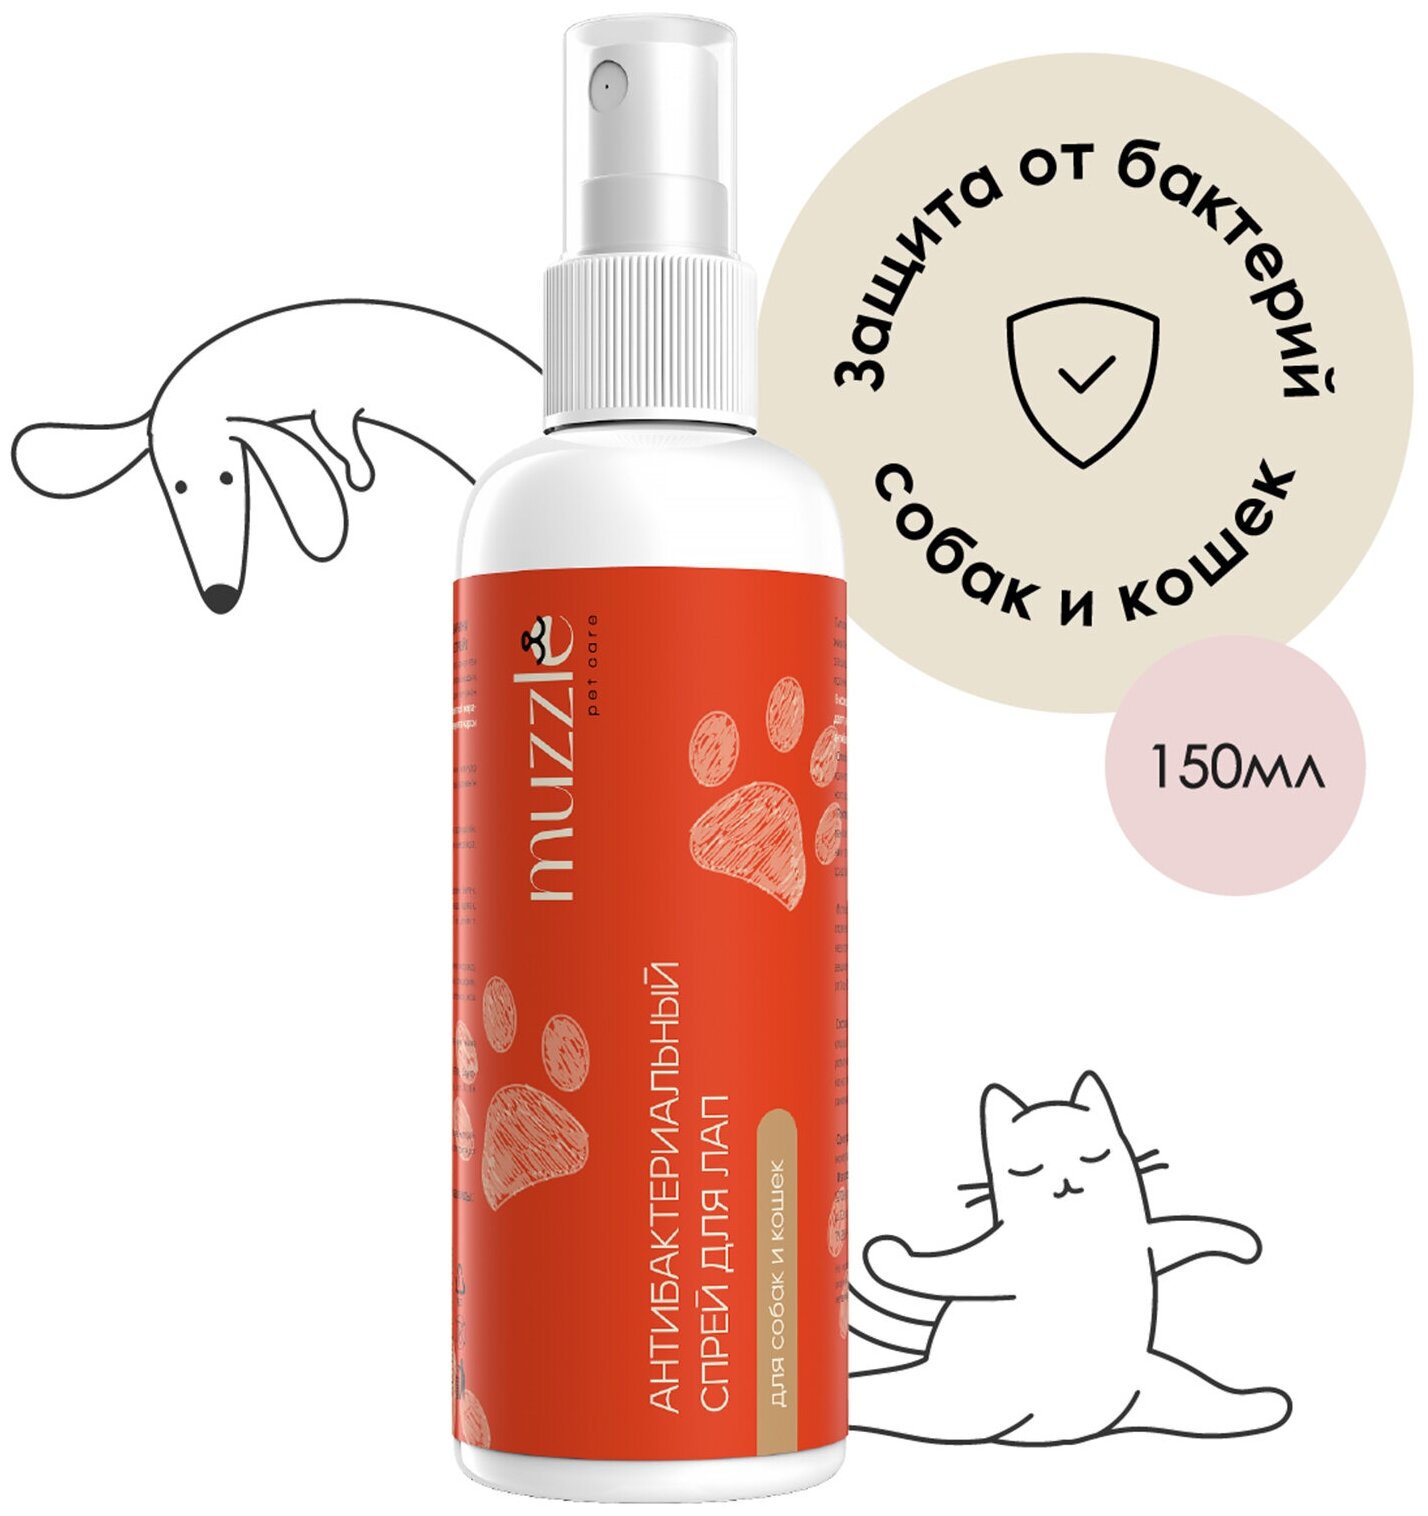 Антибактериальный спрей Muzzle для лап собак и кошек защитный спрей для животных ранозаживляющий успокаивающий / защита лап собак от бактерий 150мл